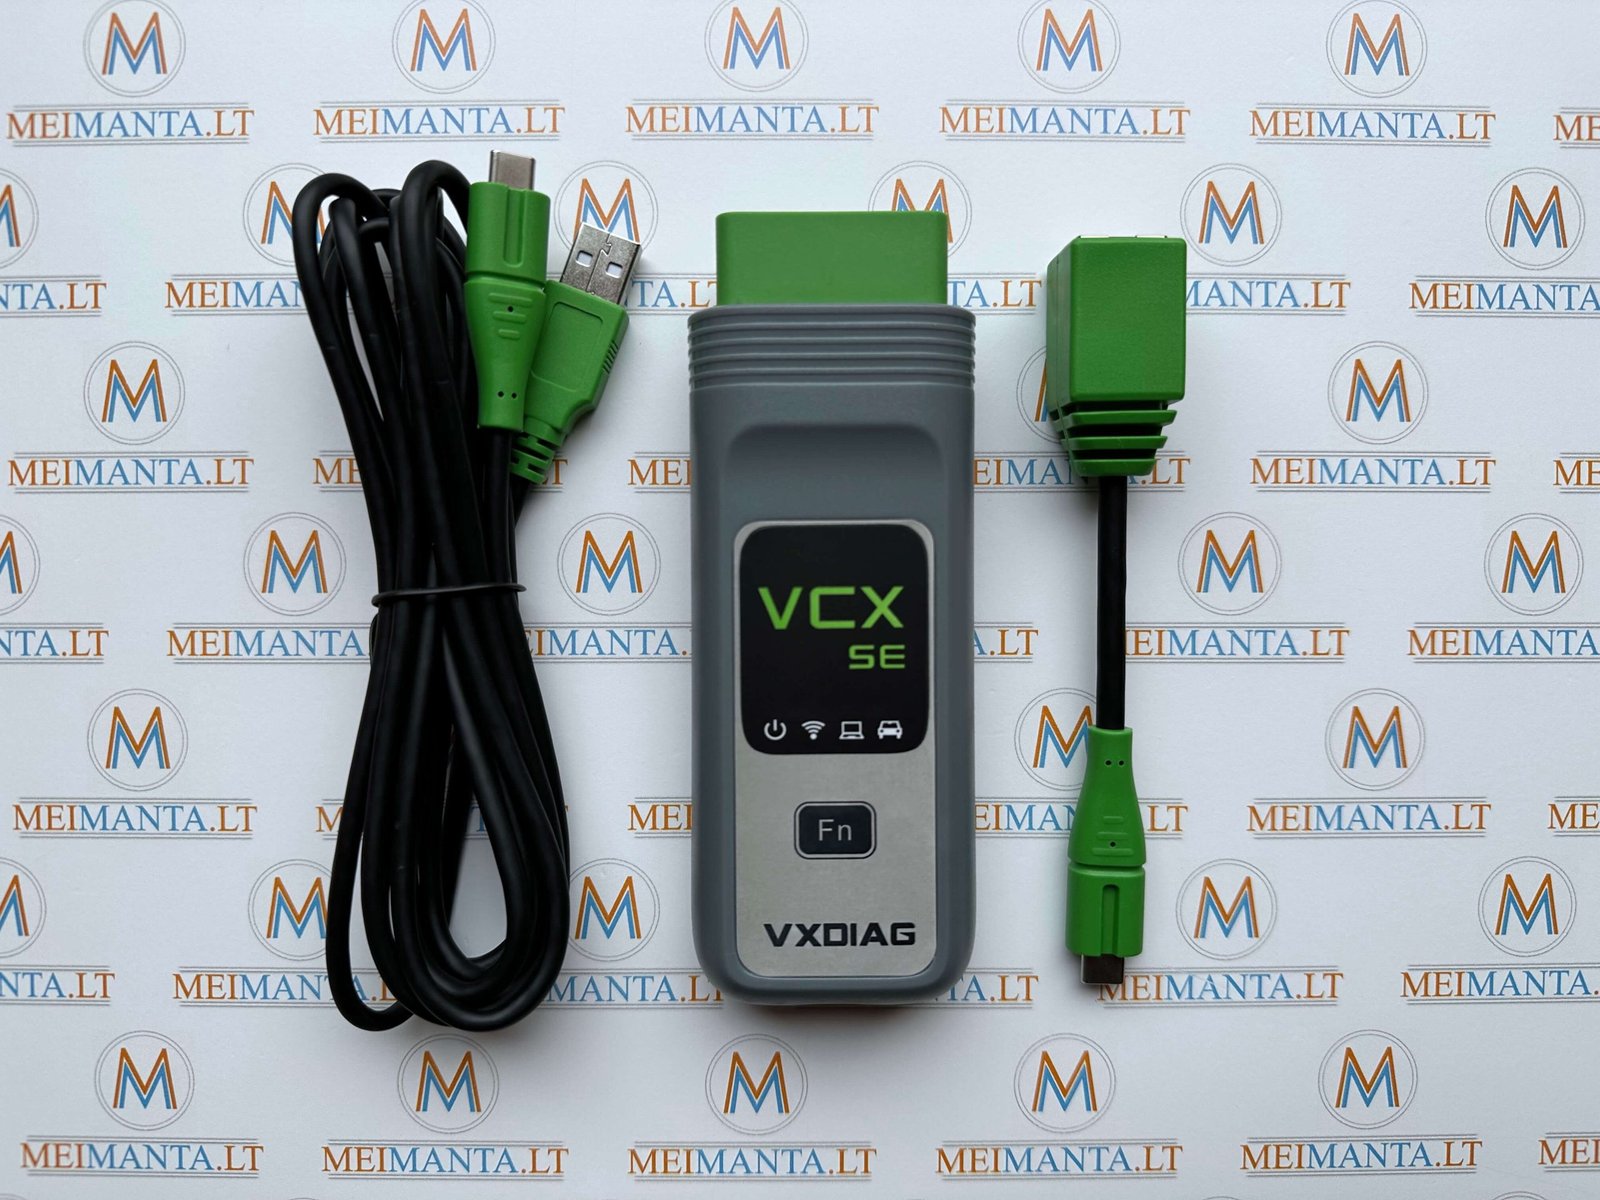 Mercedes Benz, Maybach, Smart VXDIAG VCX SE (USB, Wi-Fi, LAN)